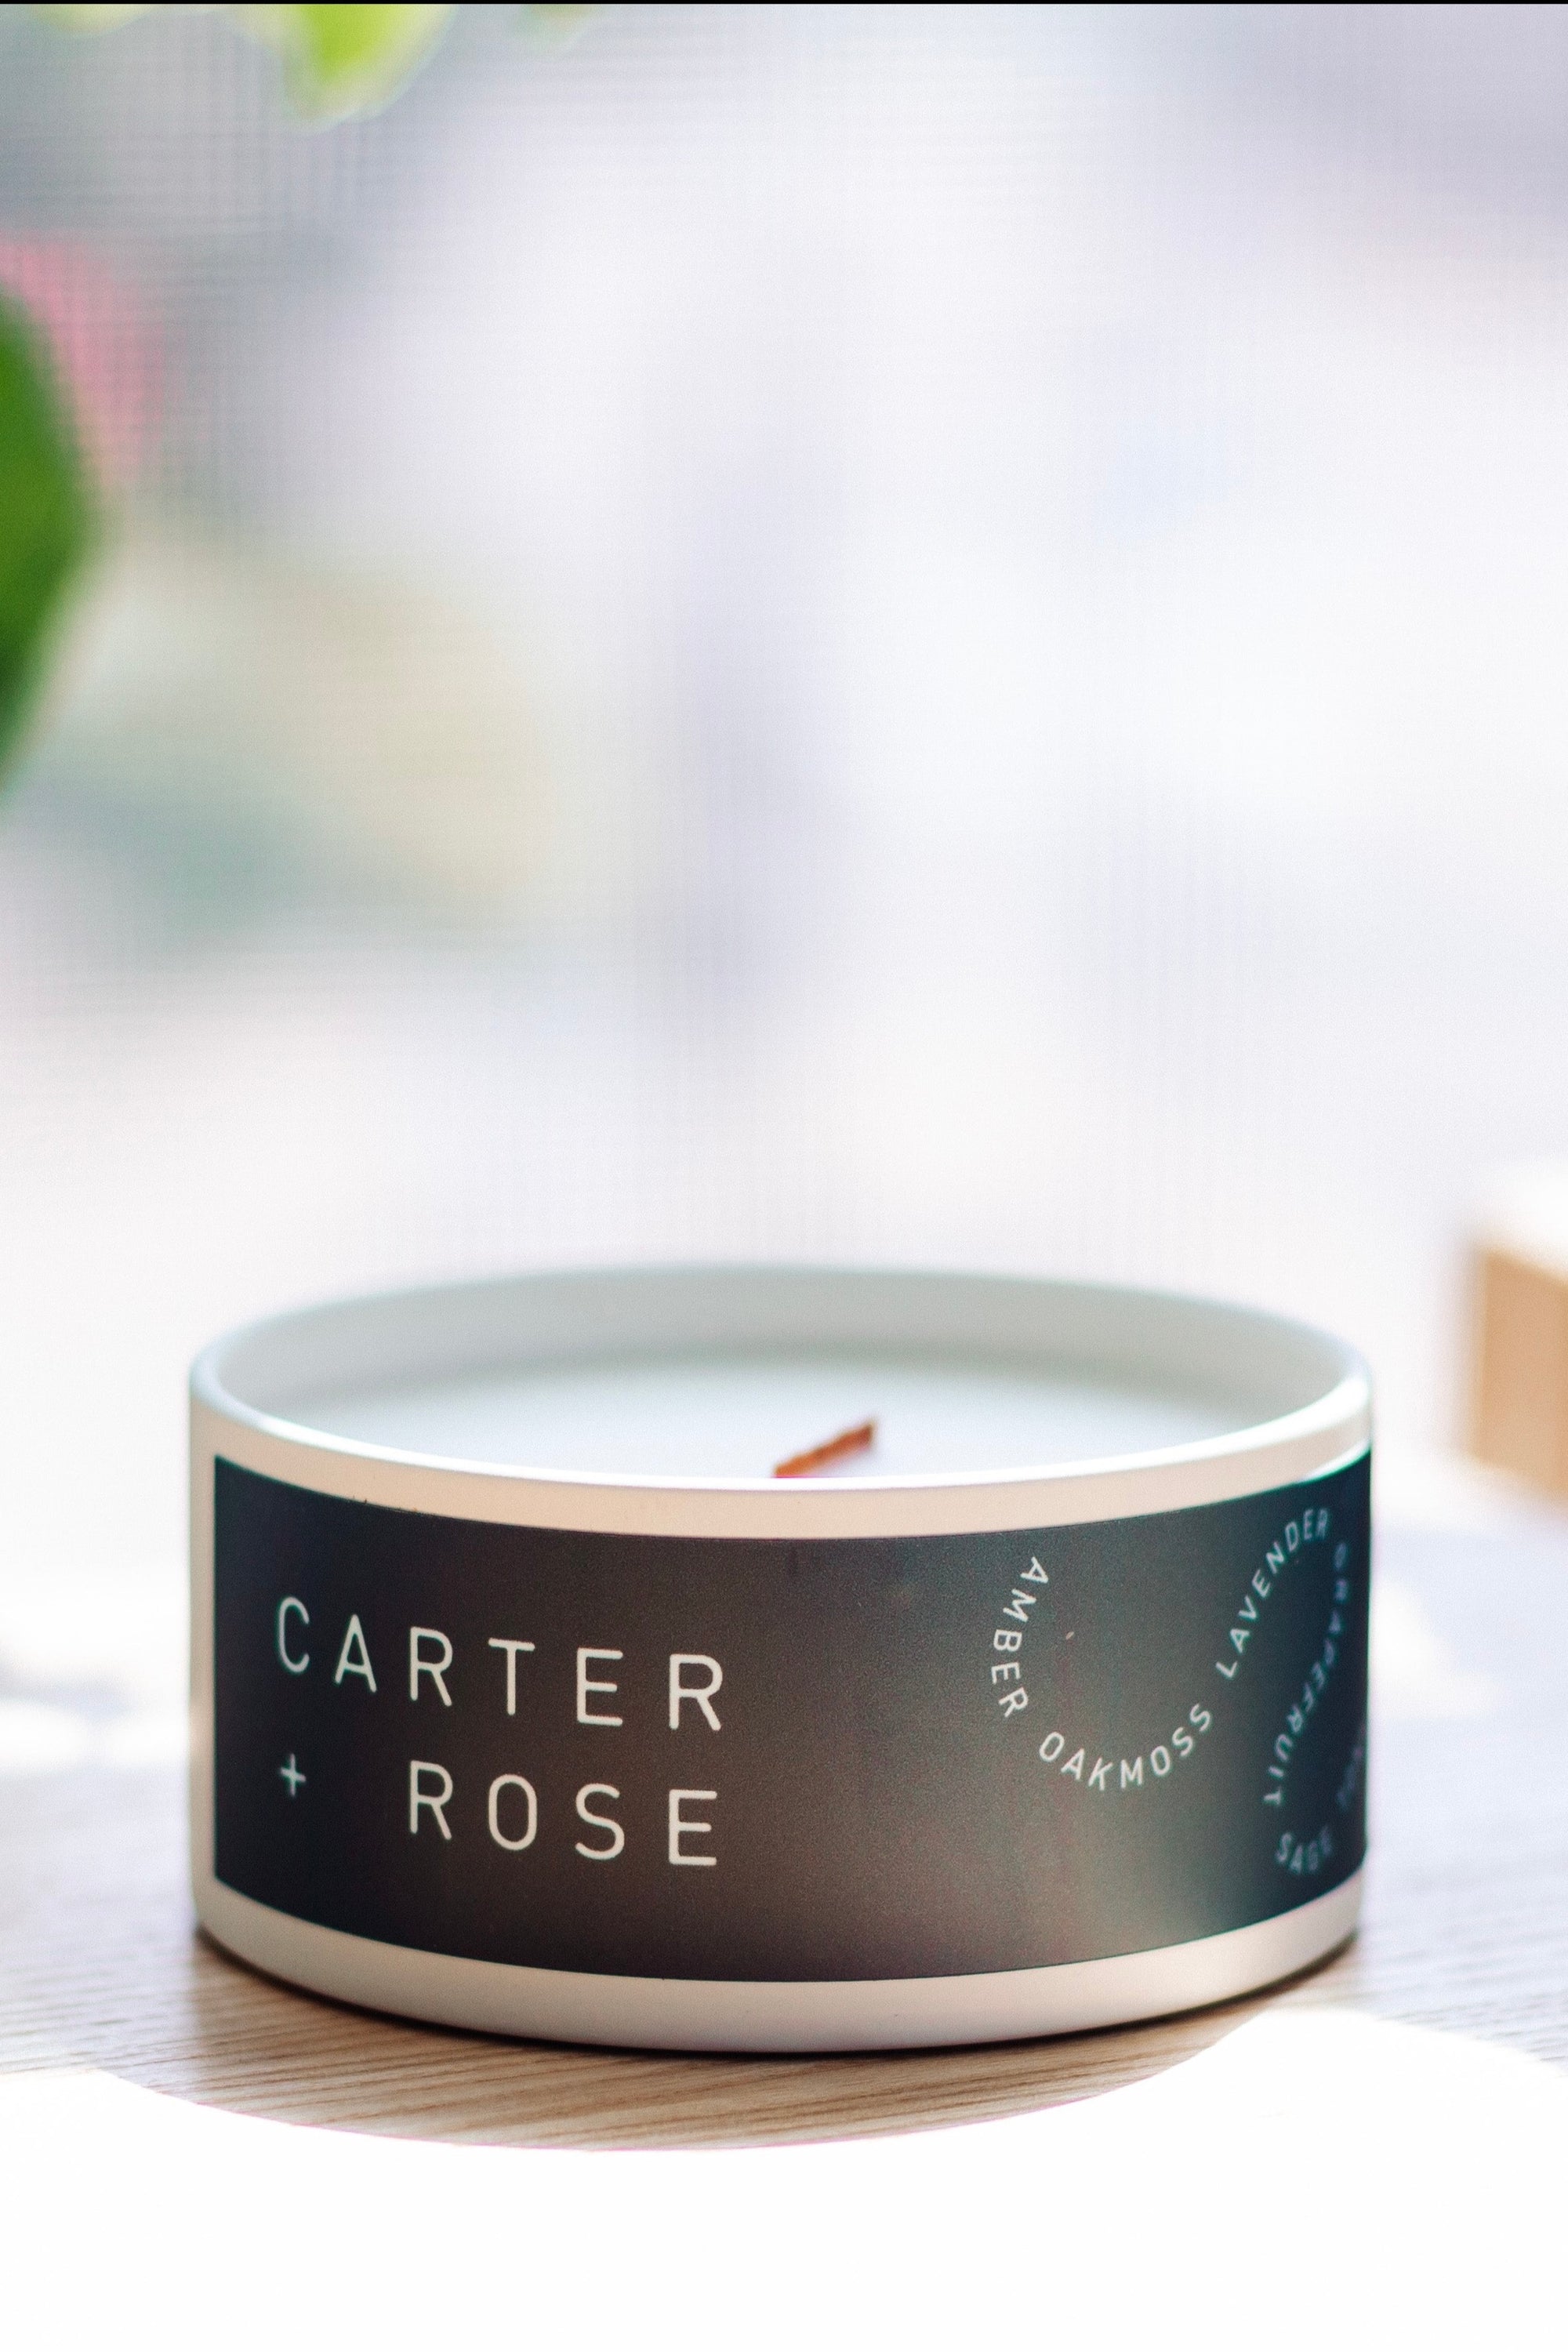 Carter + Rose Candles - Carter + Rose